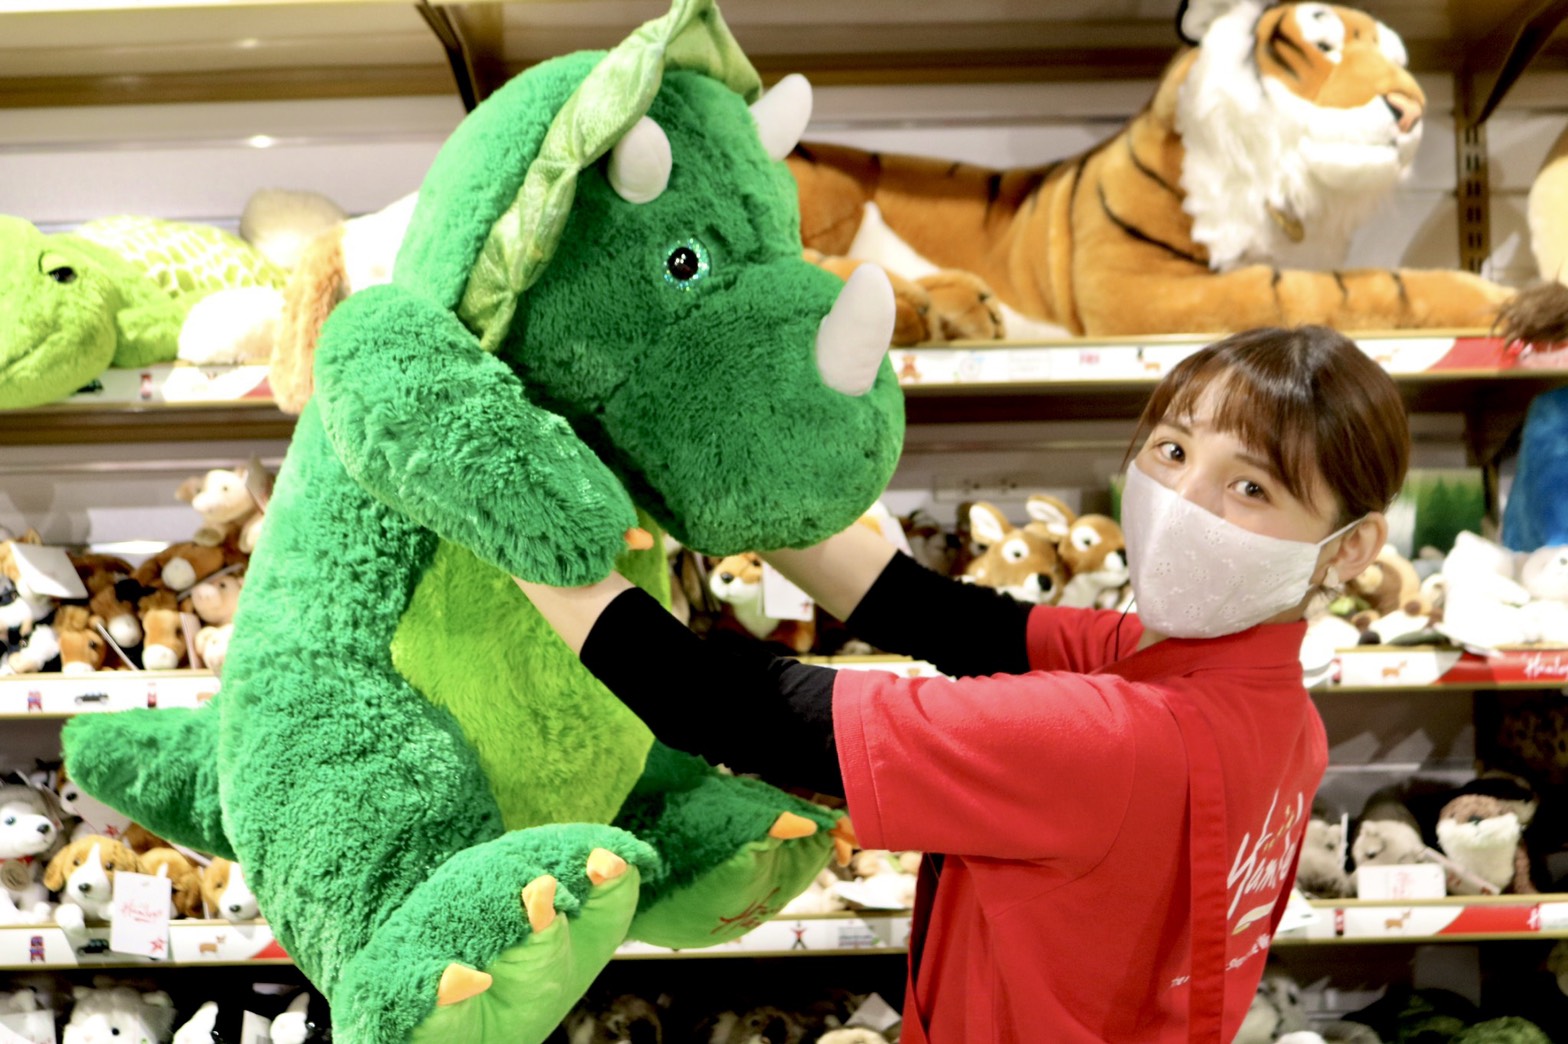 Hamleys Japan ハムリーズ 博多店 寒くなってきましたね ハムリーズにはこんな大きなぬいぐるみもあるよ ギュッと抱きしめたいね Fuzzbuzz Hamleys 恐竜のぬいぐるみ T Co Zgj6mffa1y Twitter